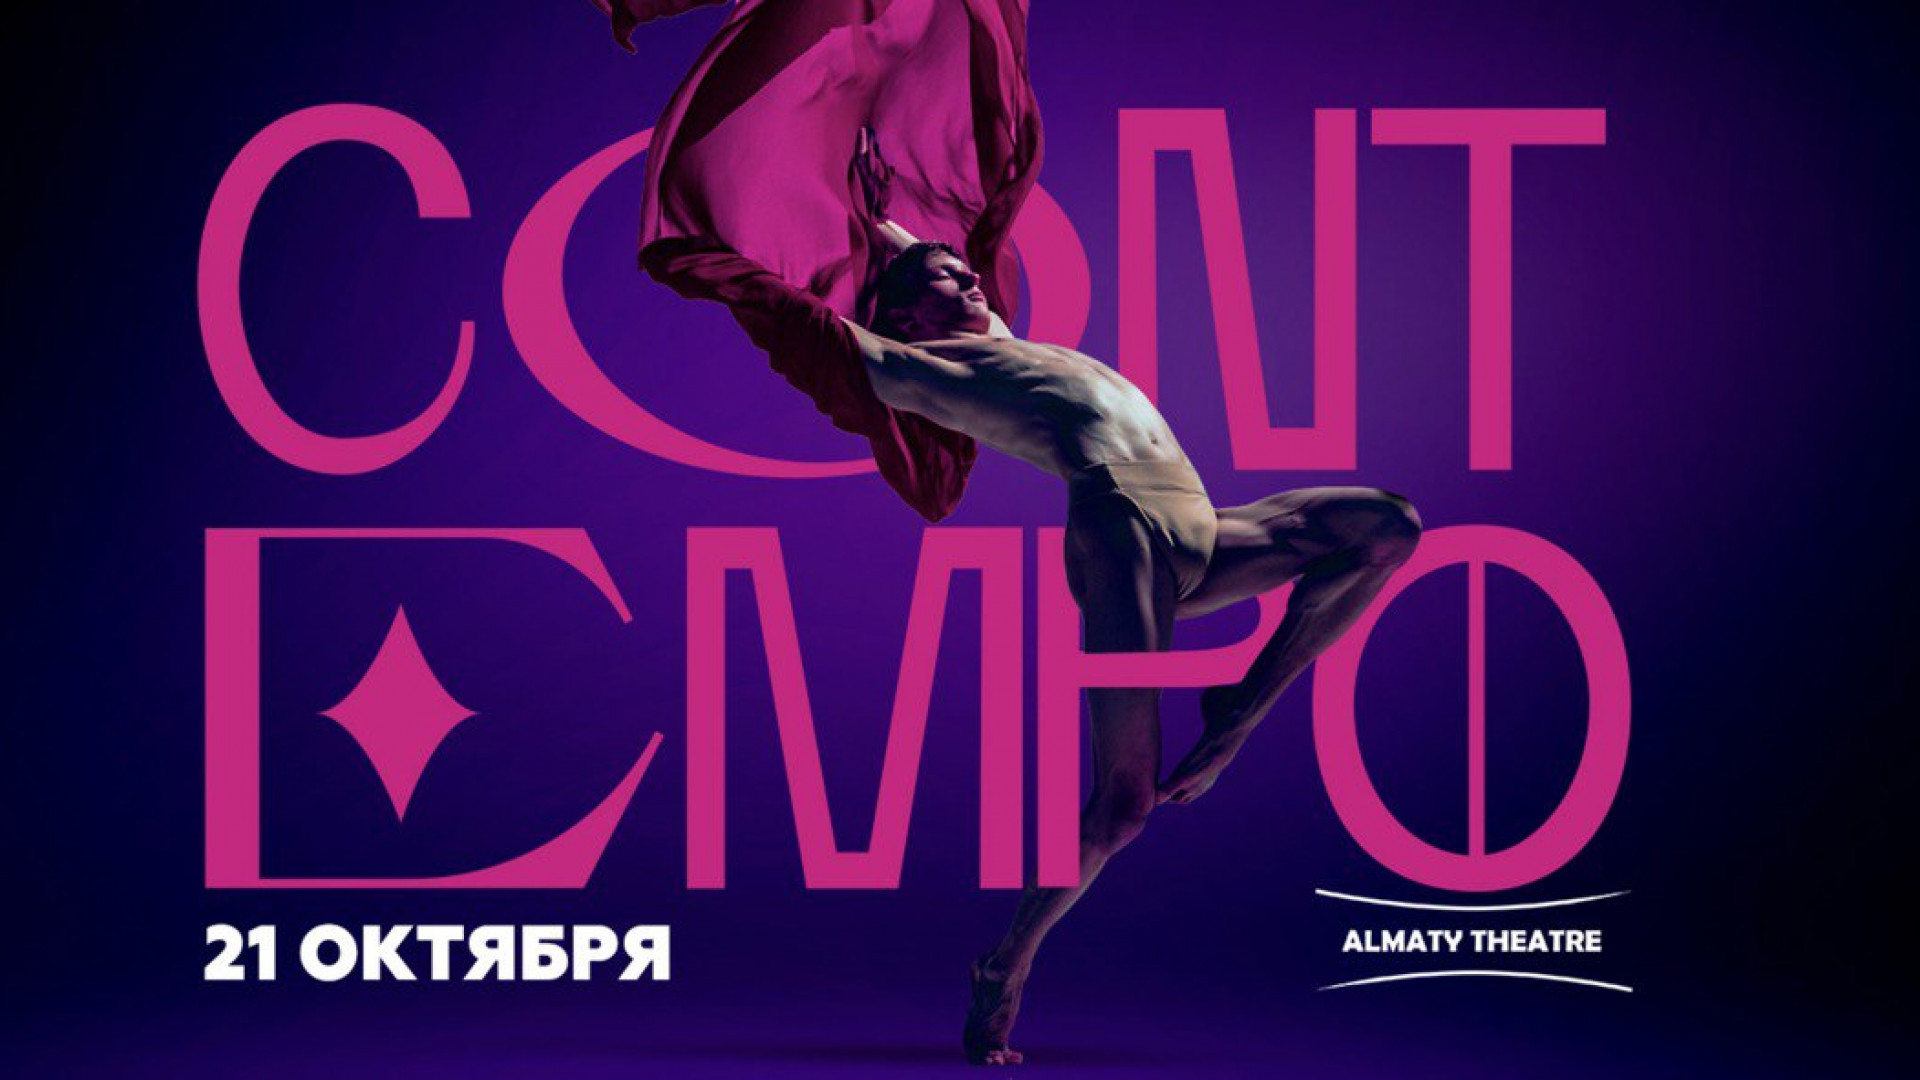 Звезды контемпорари балета выступят на фестивале CONTEMPO by Ballet Globe в Almaty Theatre